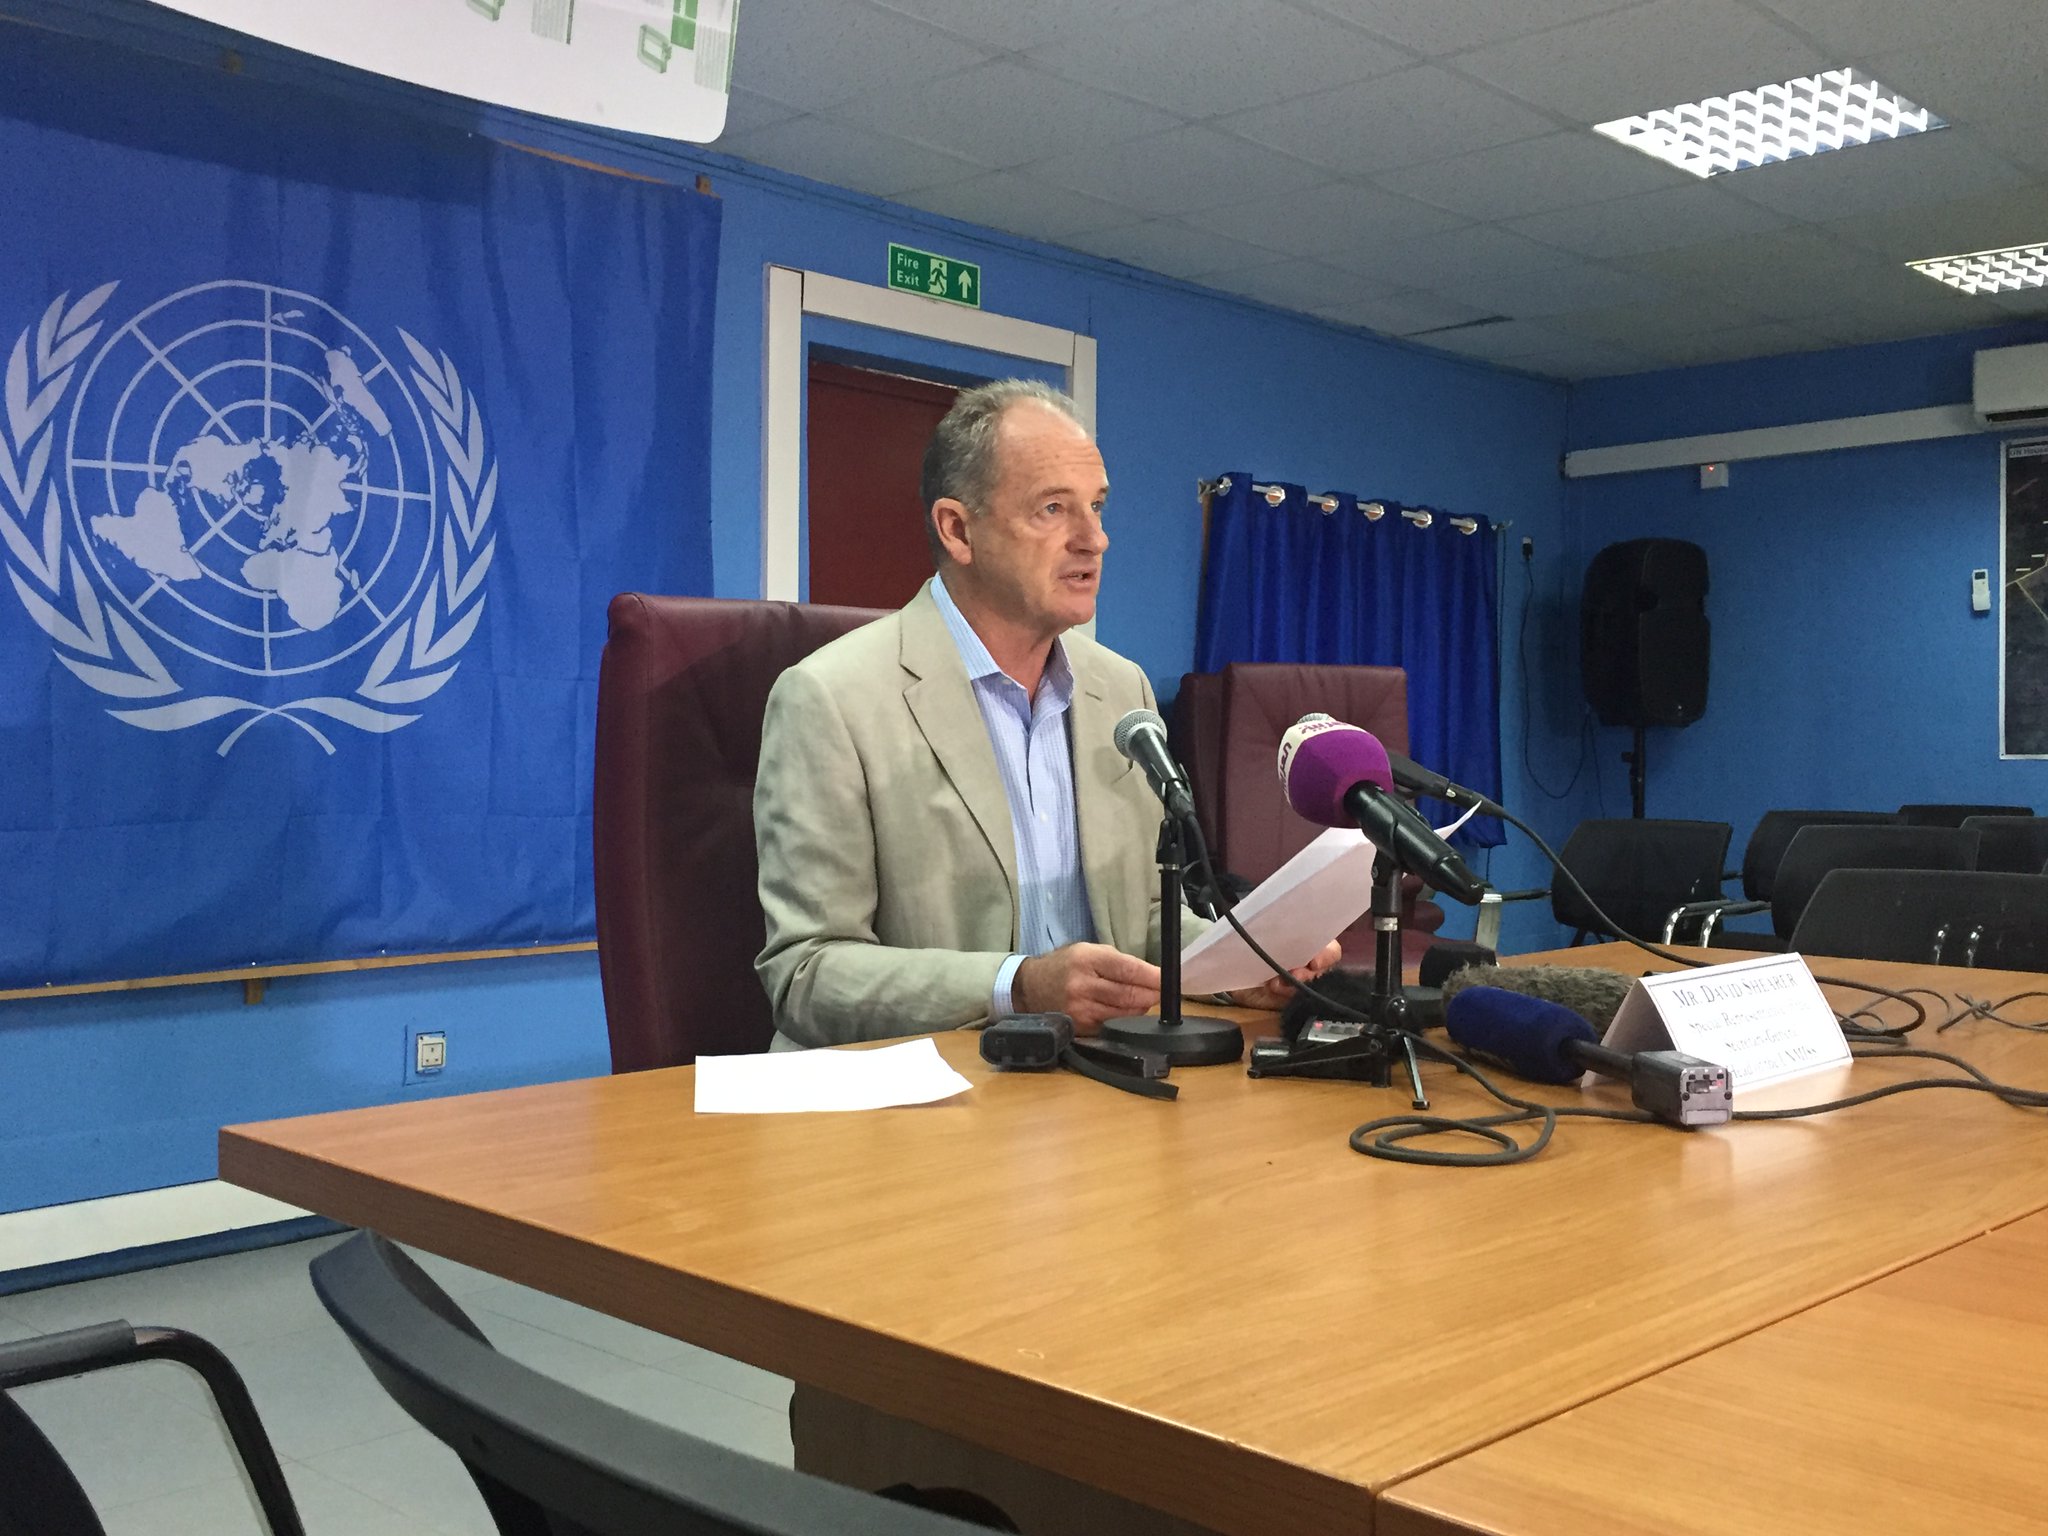 David Shearer, Head of UN Mission in South Sudan